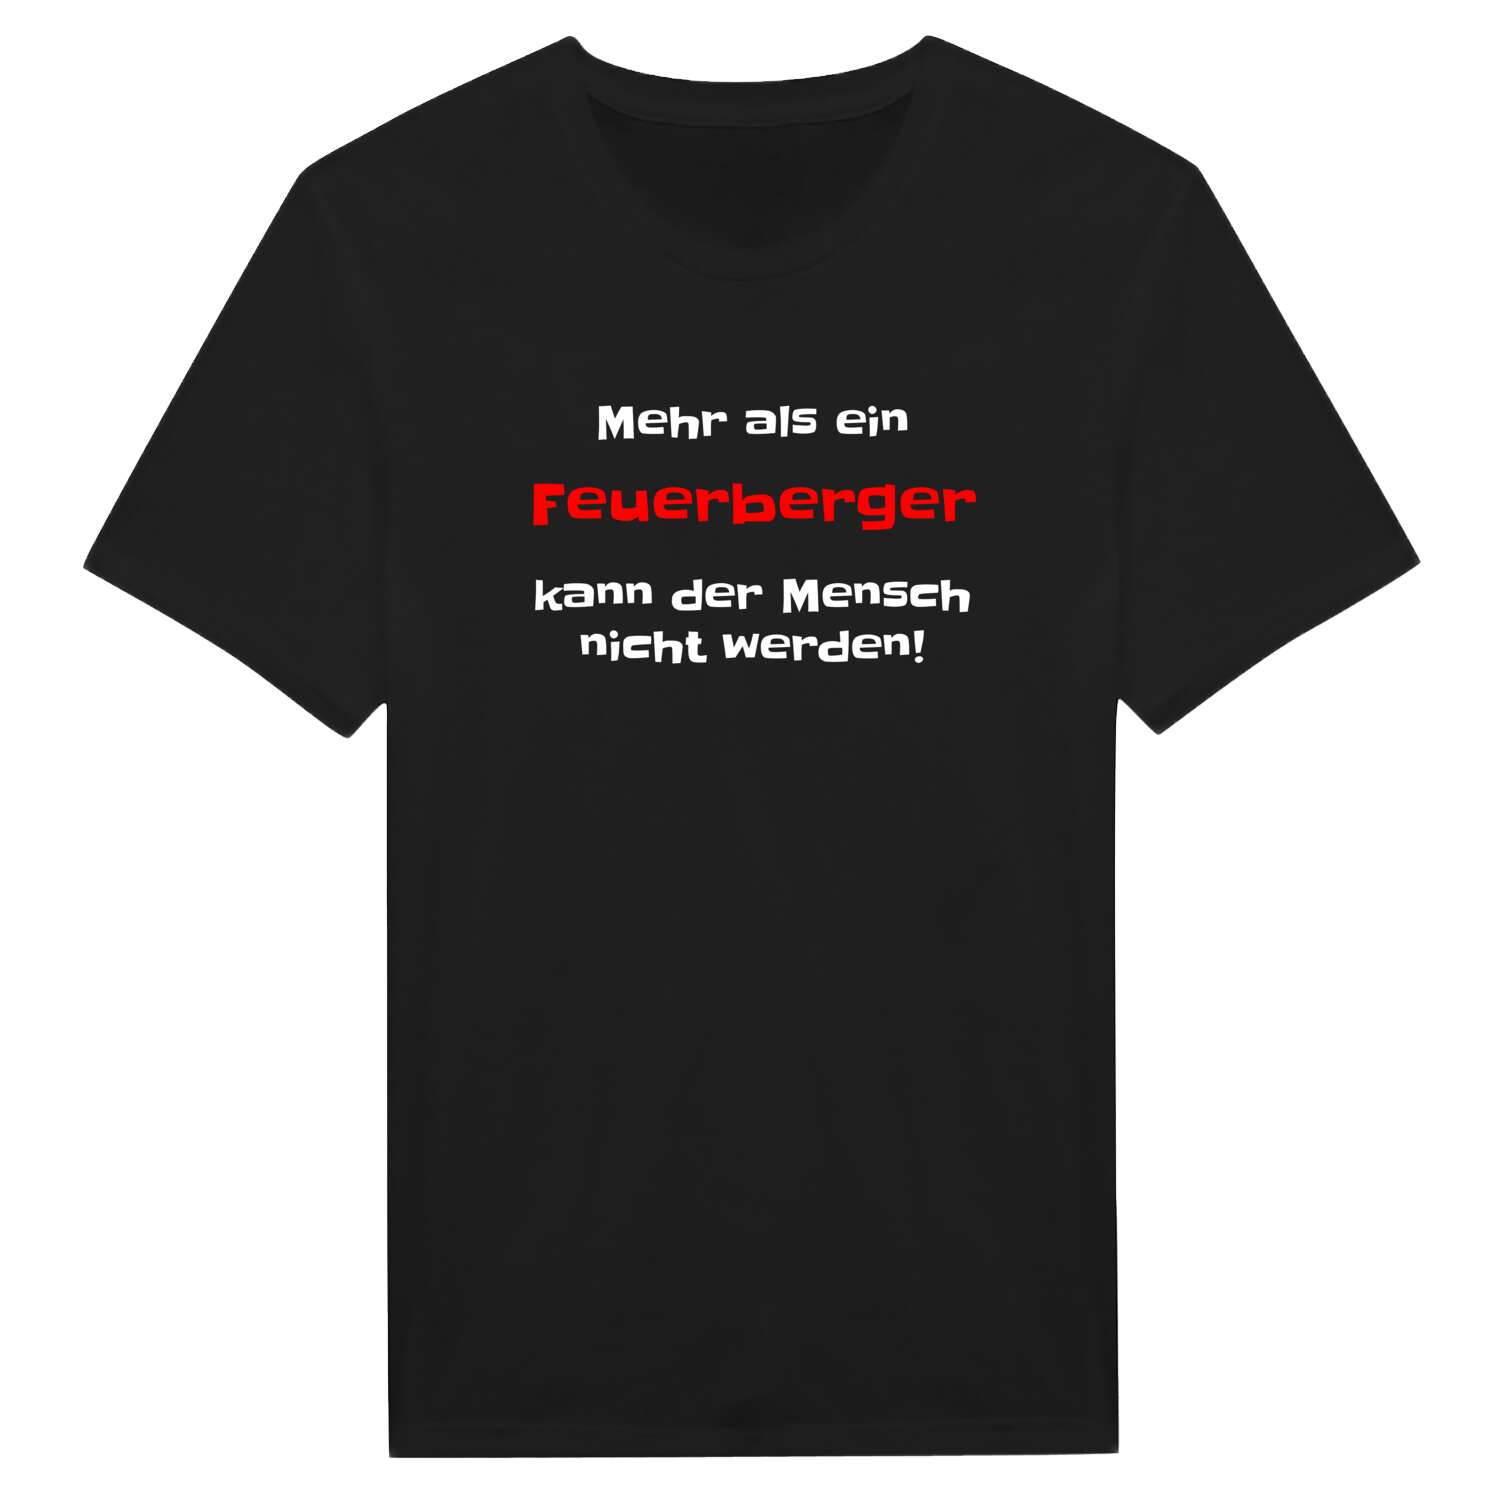 Feuerberg T-Shirt »Mehr als ein«